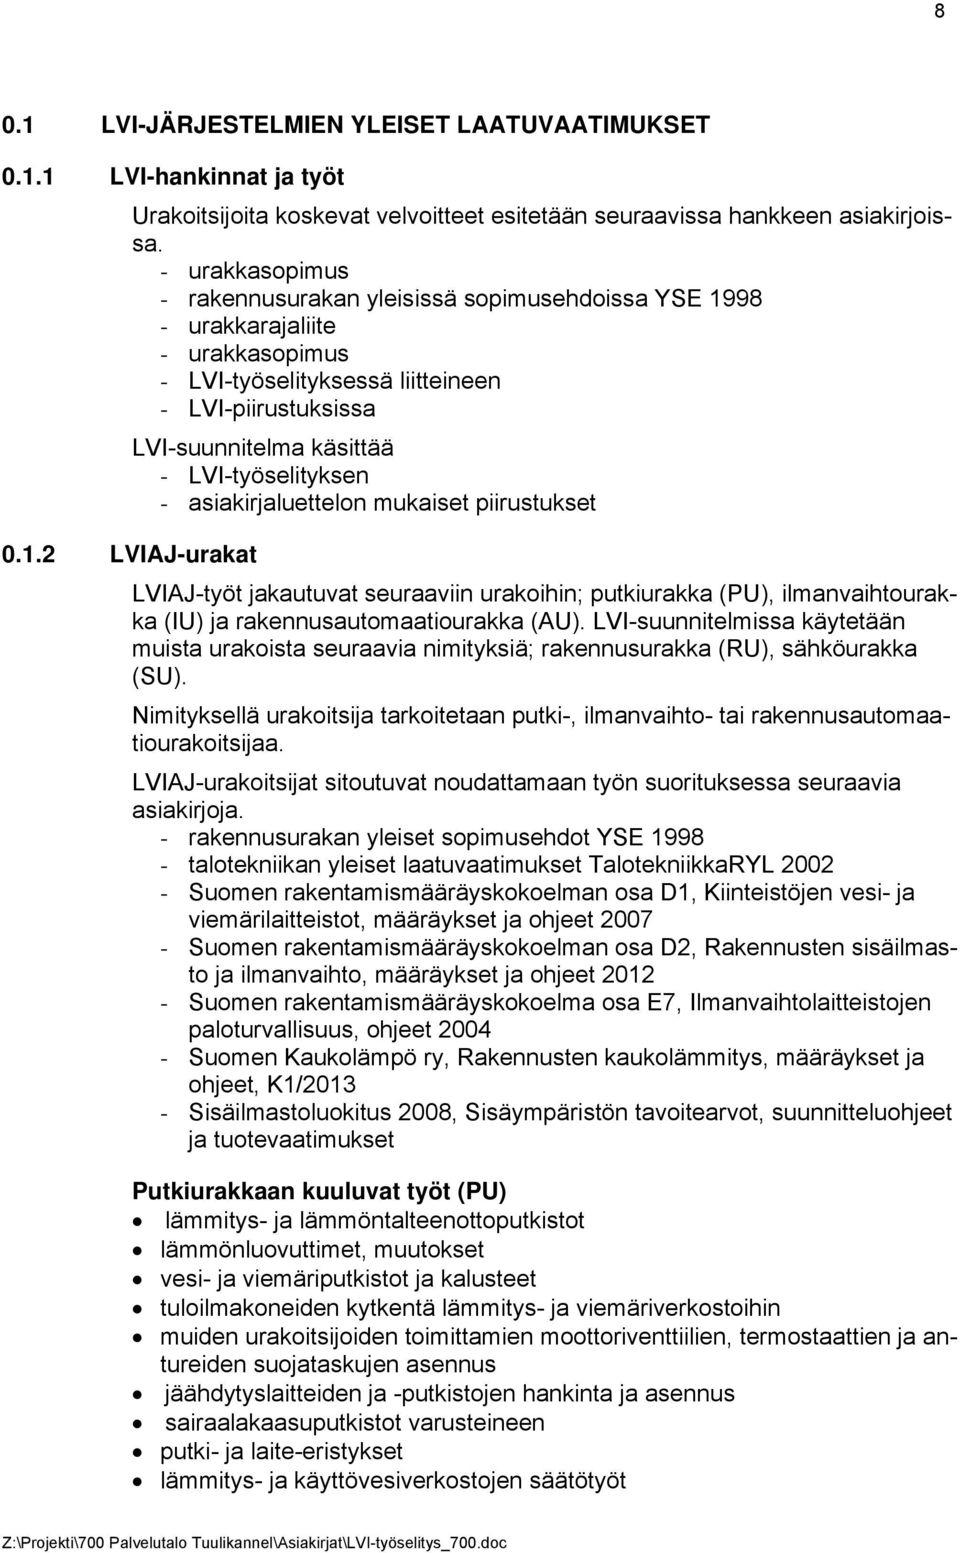 LVI-työselityksen - asiakirjaluettelon mukaiset piirustukset 0.1.2 LVIAJ-urakat LVIAJ-työt jakautuvat seuraaviin urakoihin; putkiurakka (PU), ilmanvaihtourakka (IU) ja rakennusautomaatiourakka (AU).